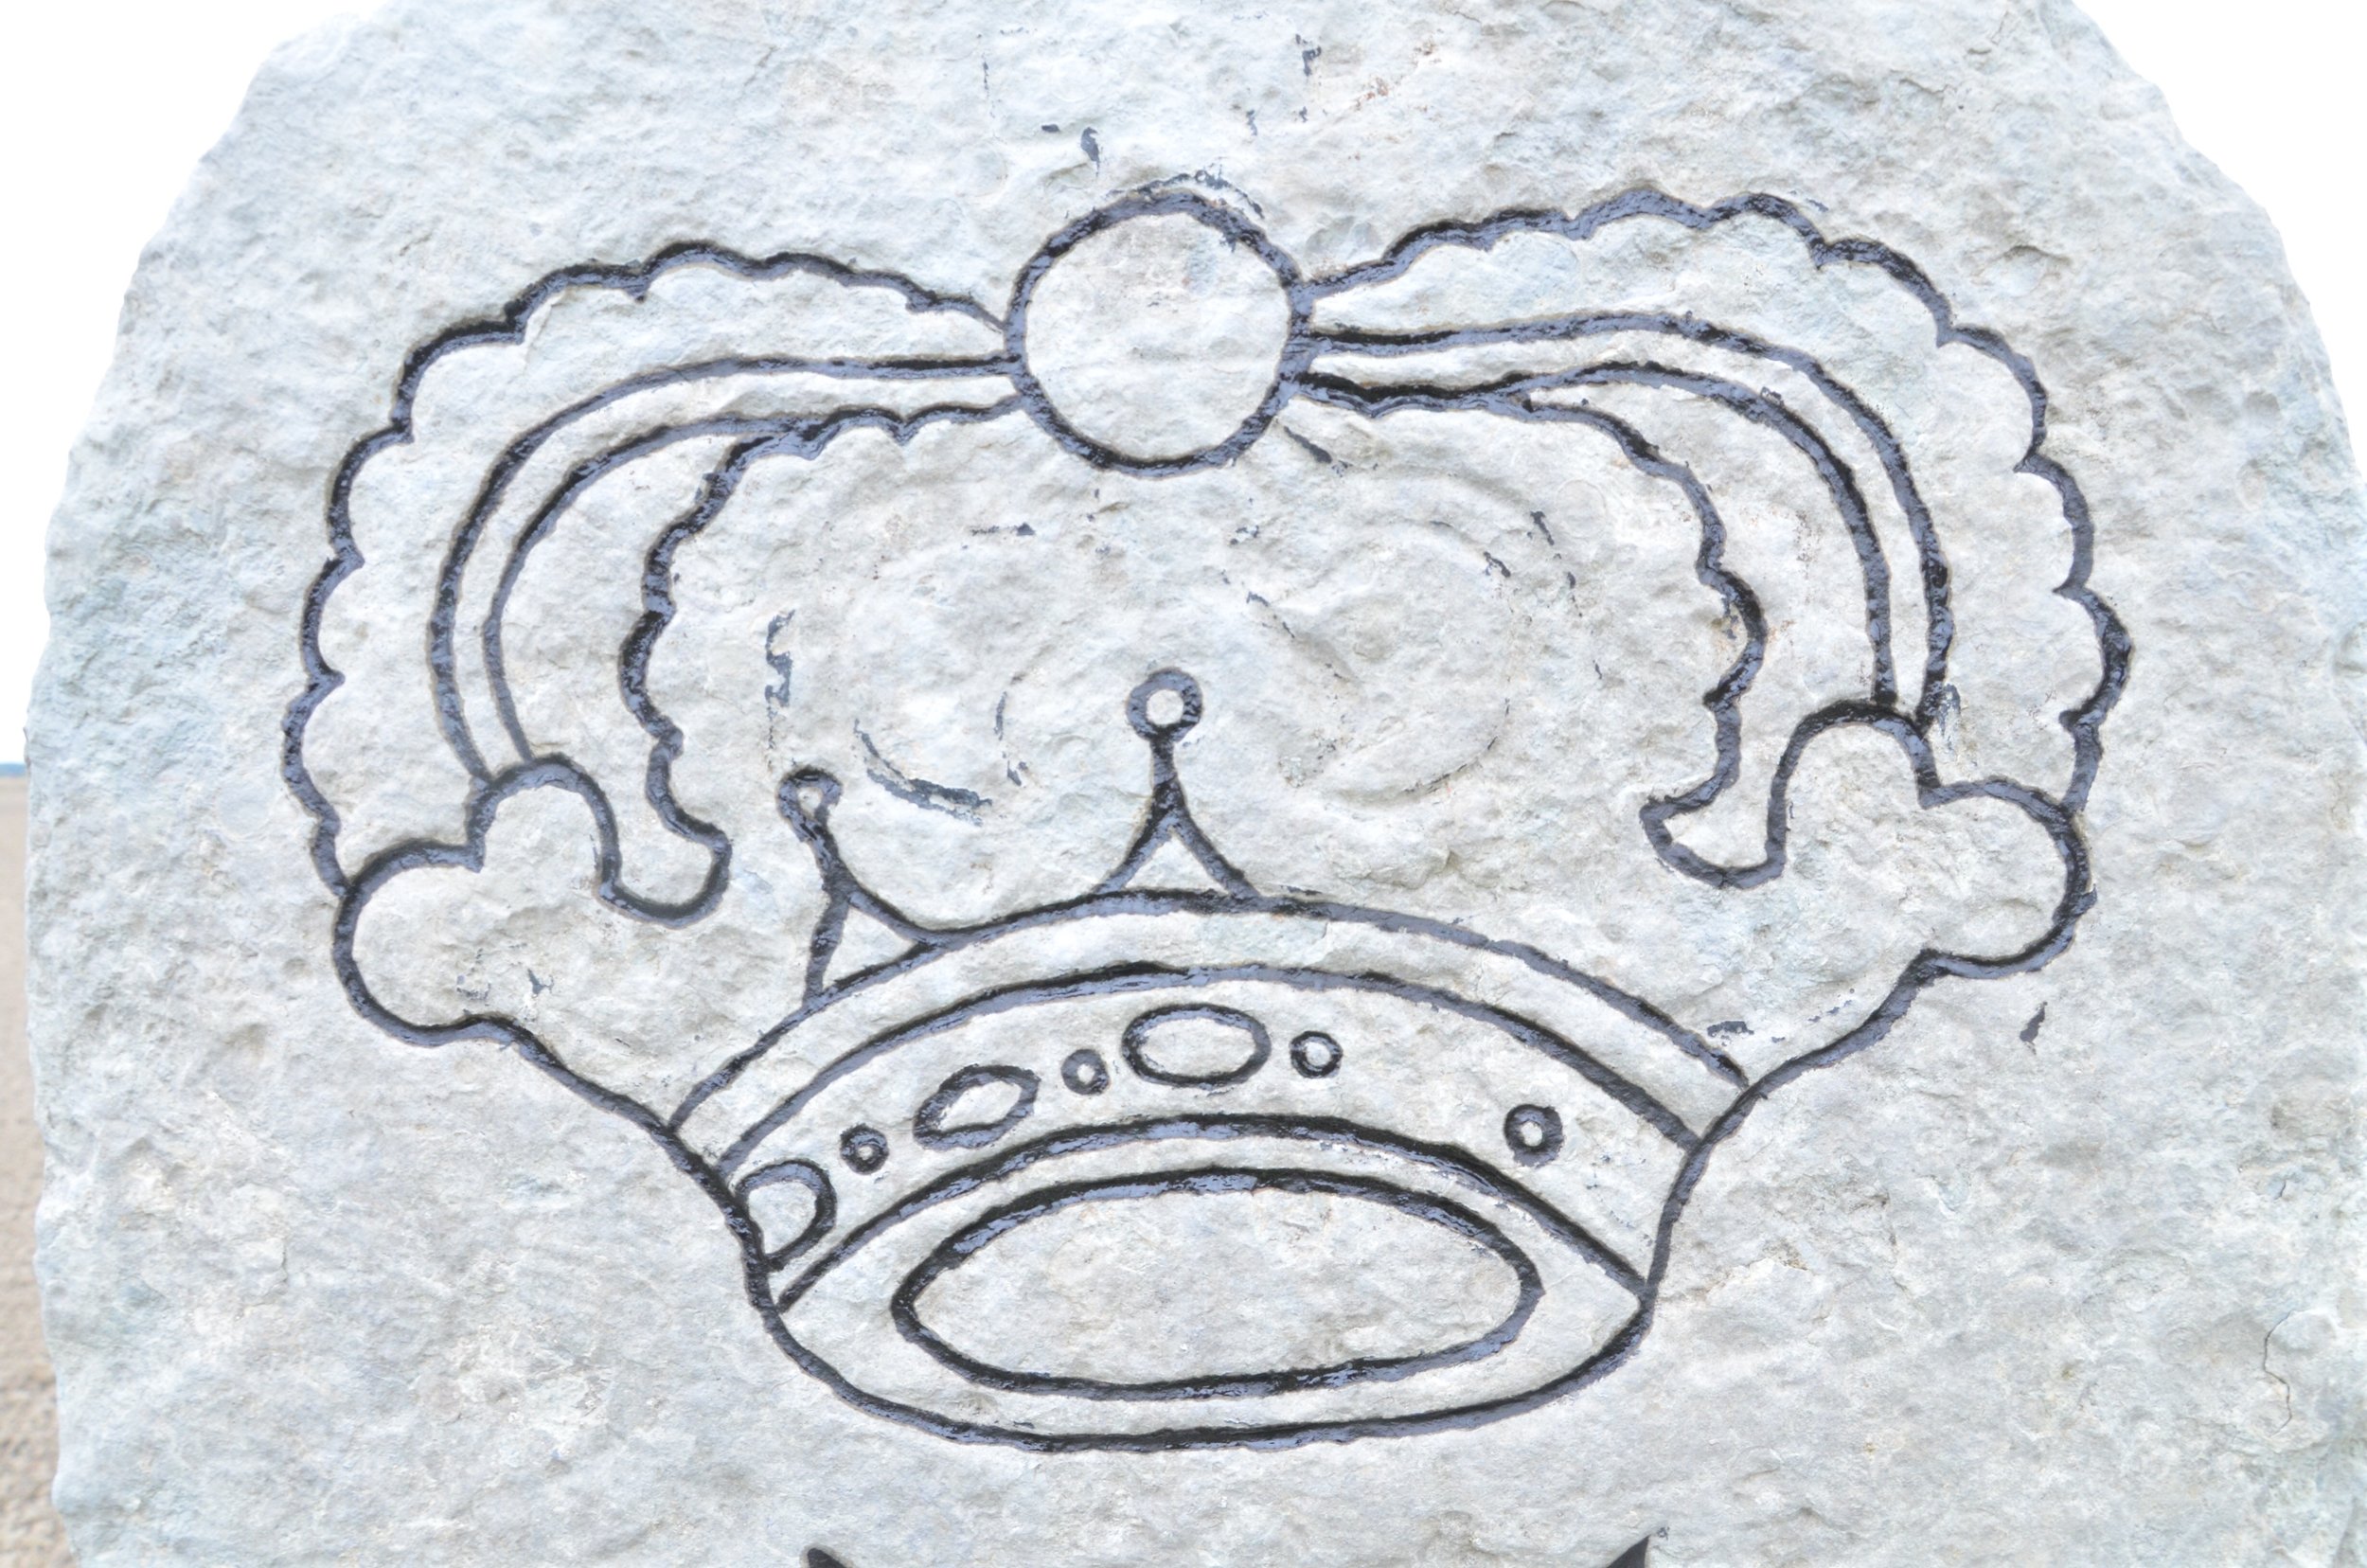  Detaljbild på en av kronorna där delar av stenen saknas 